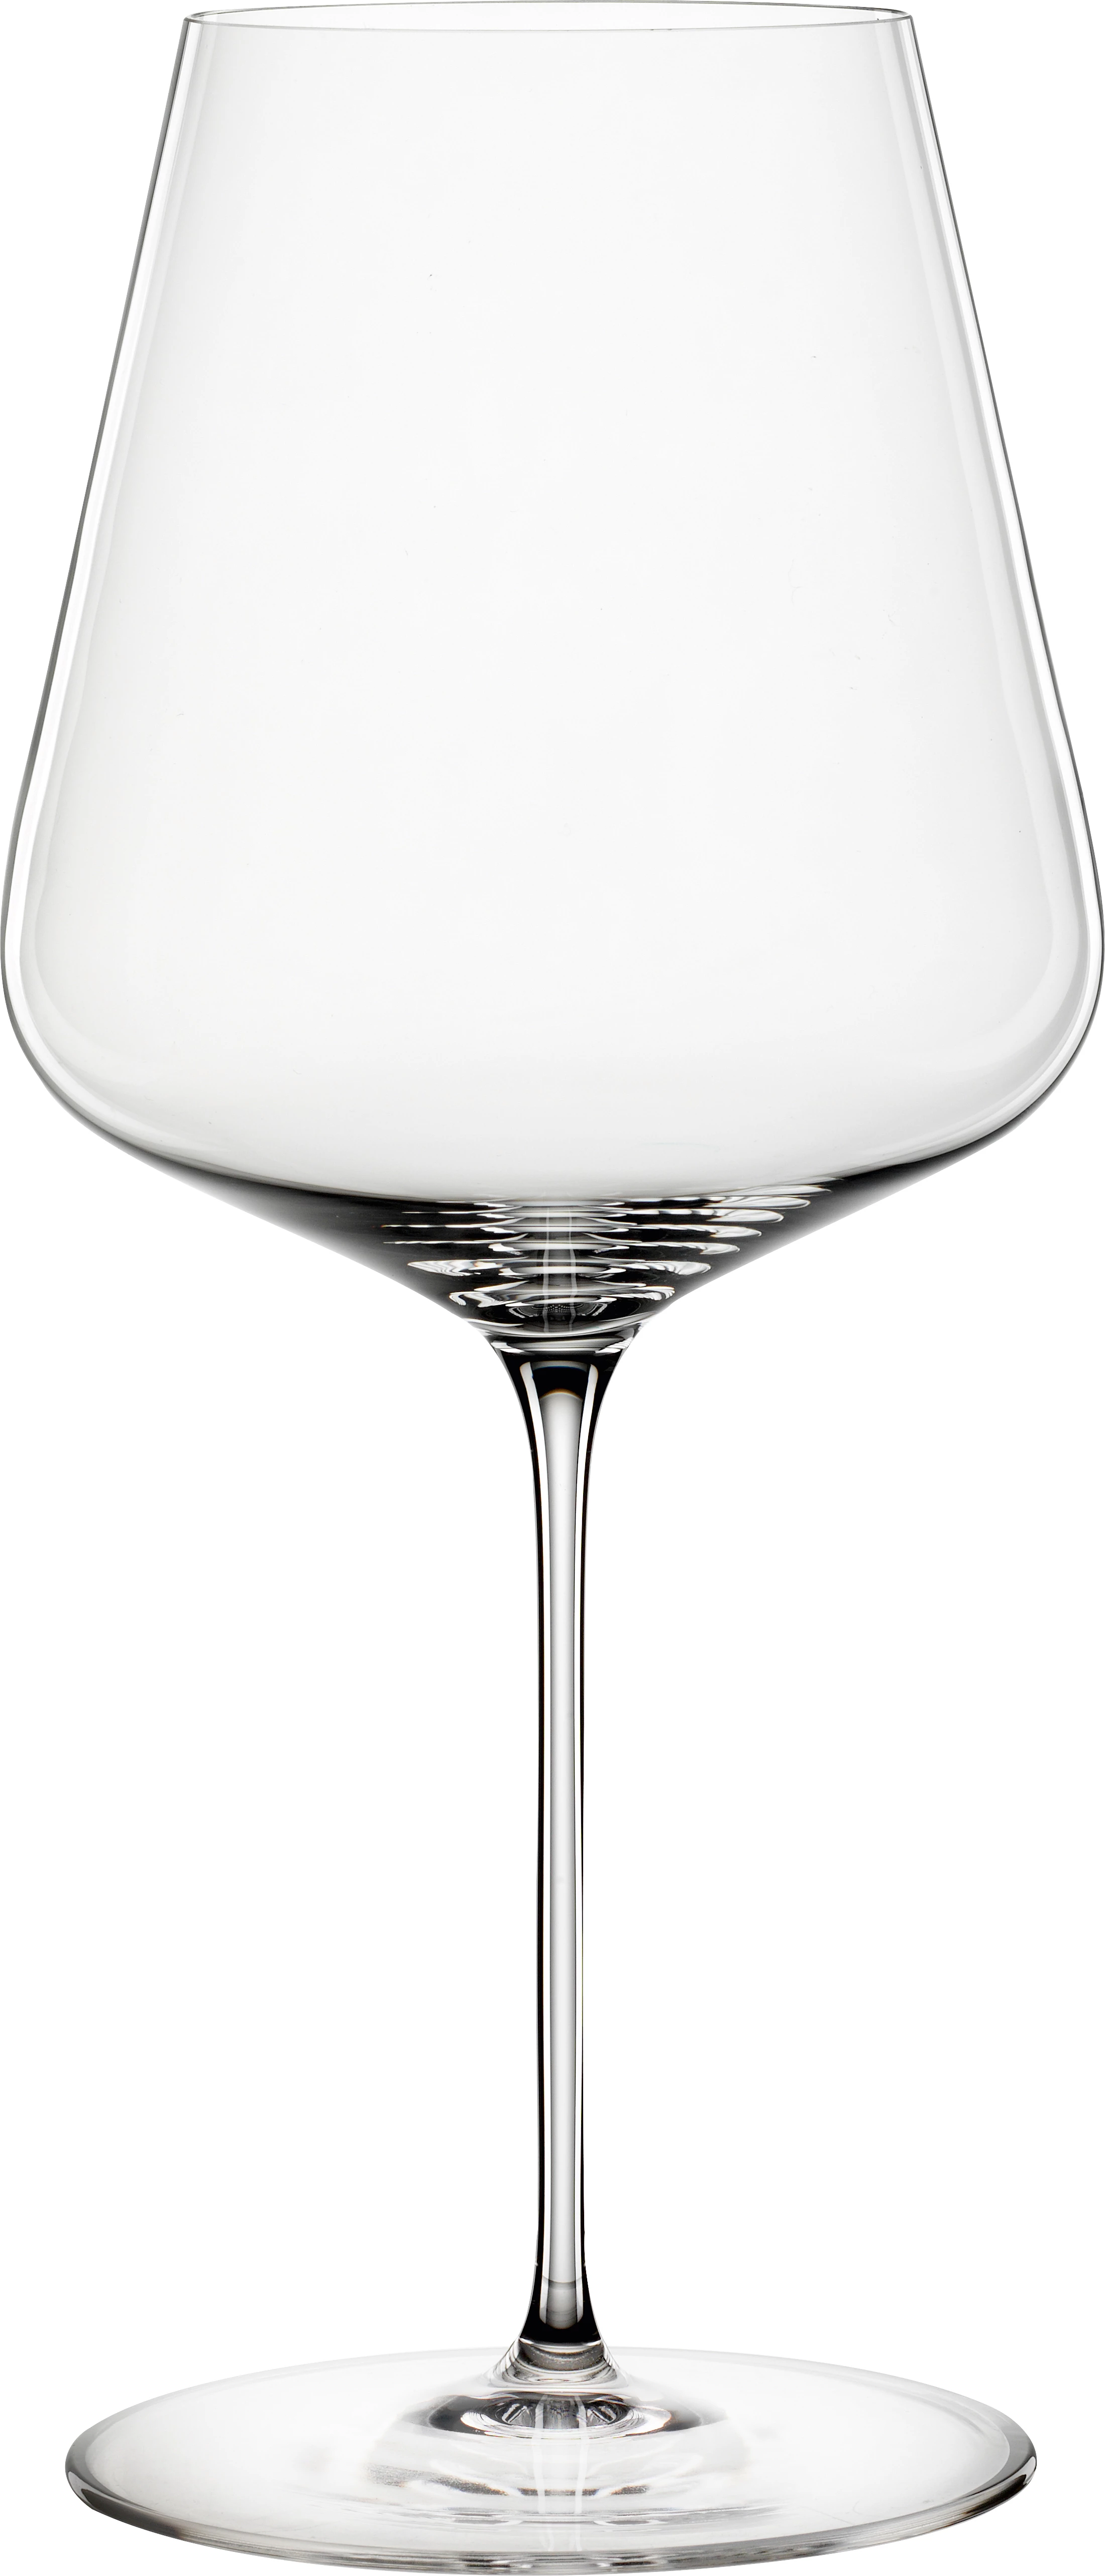 Spiegelau Definition vinglas, bordeaux, 75 cl, H24,3 cm